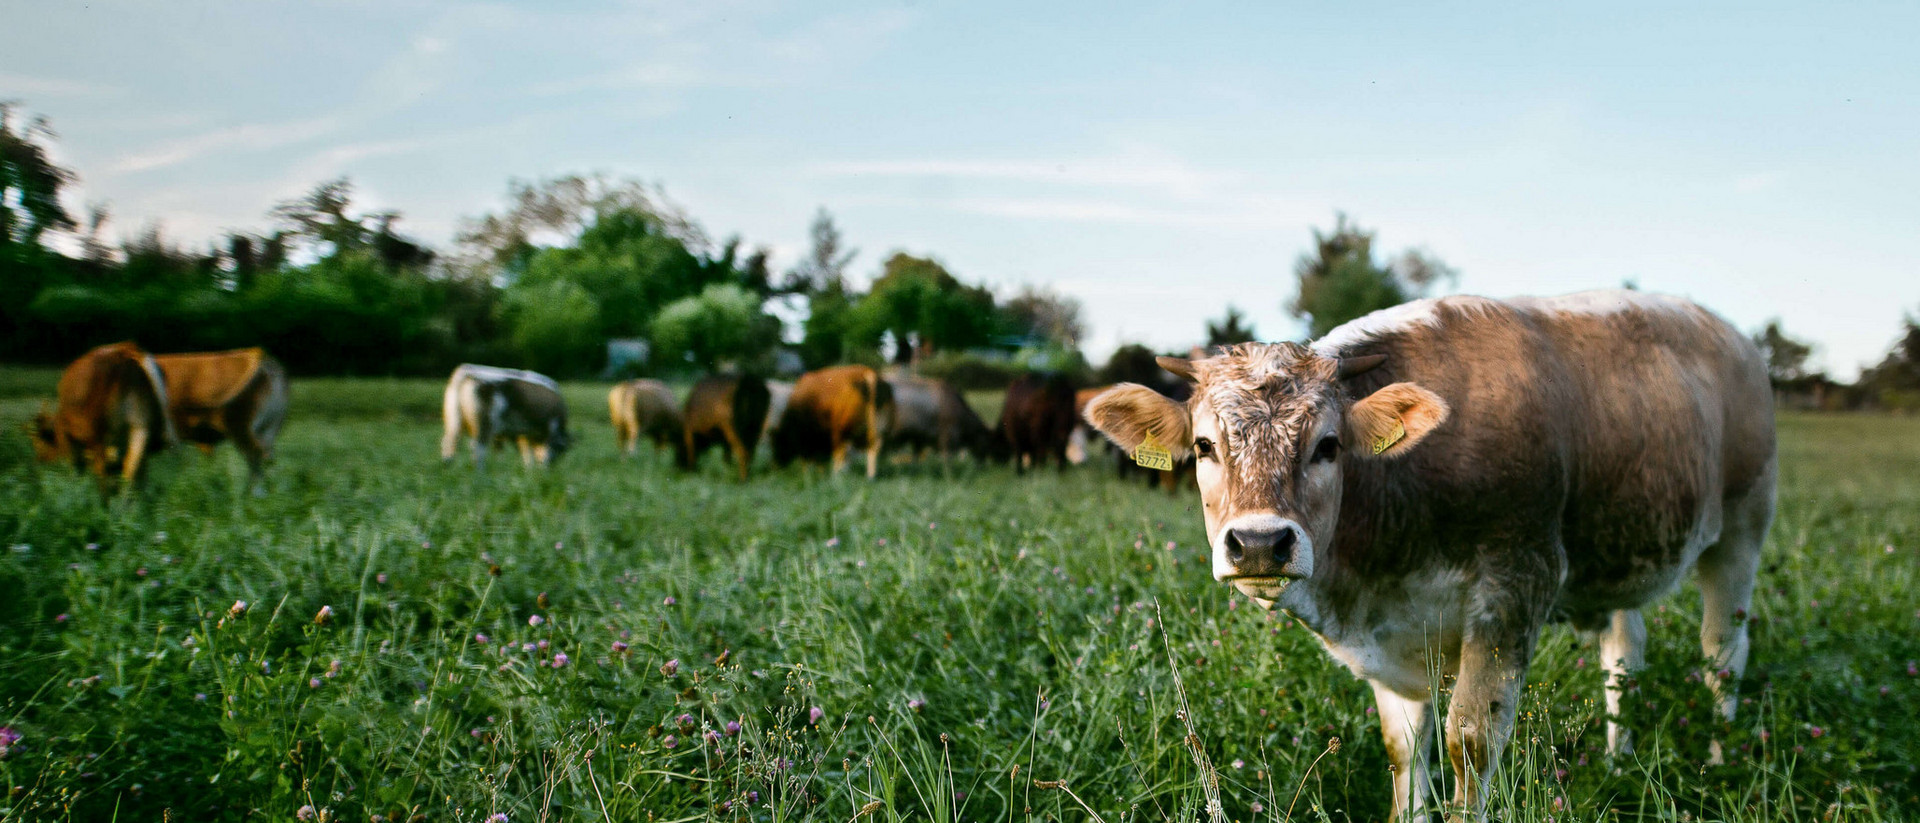 Eine Herde Kühe steht auf einer saftigen Weide. Eine Kuh steht im Vordergrund und schaut in die Kamera, der Rest der Herde steht im Hintergrund und grast.